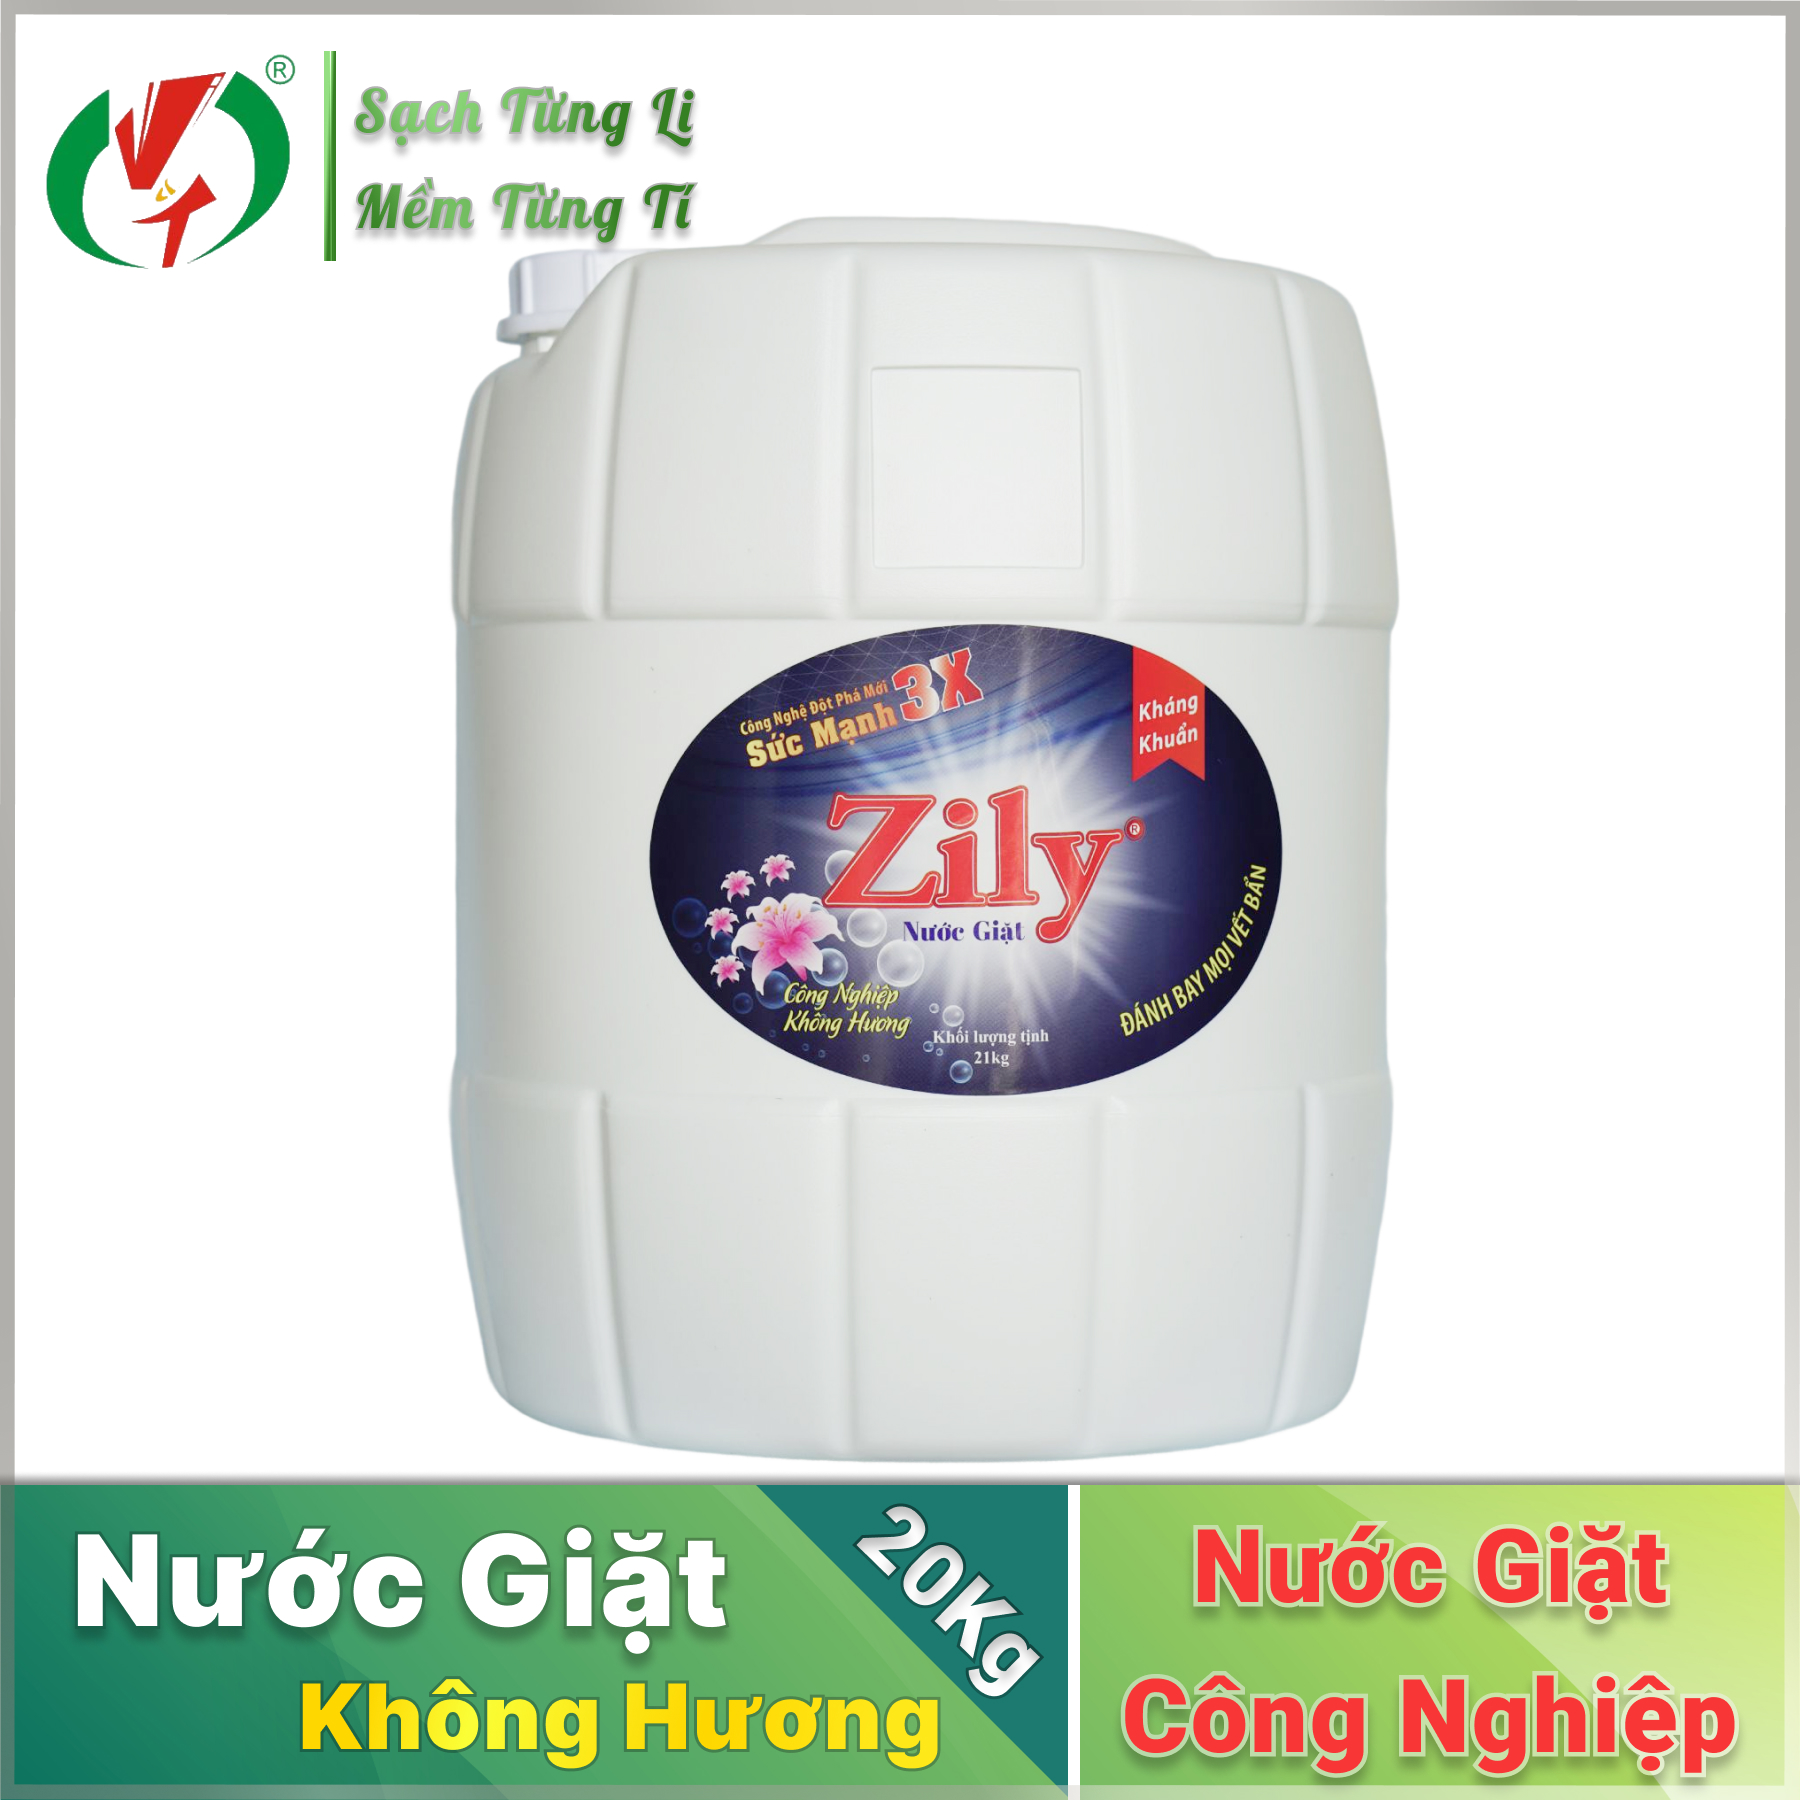 Nước giặt Zily can 20Kg - TẶNG 1 NXV 5KG